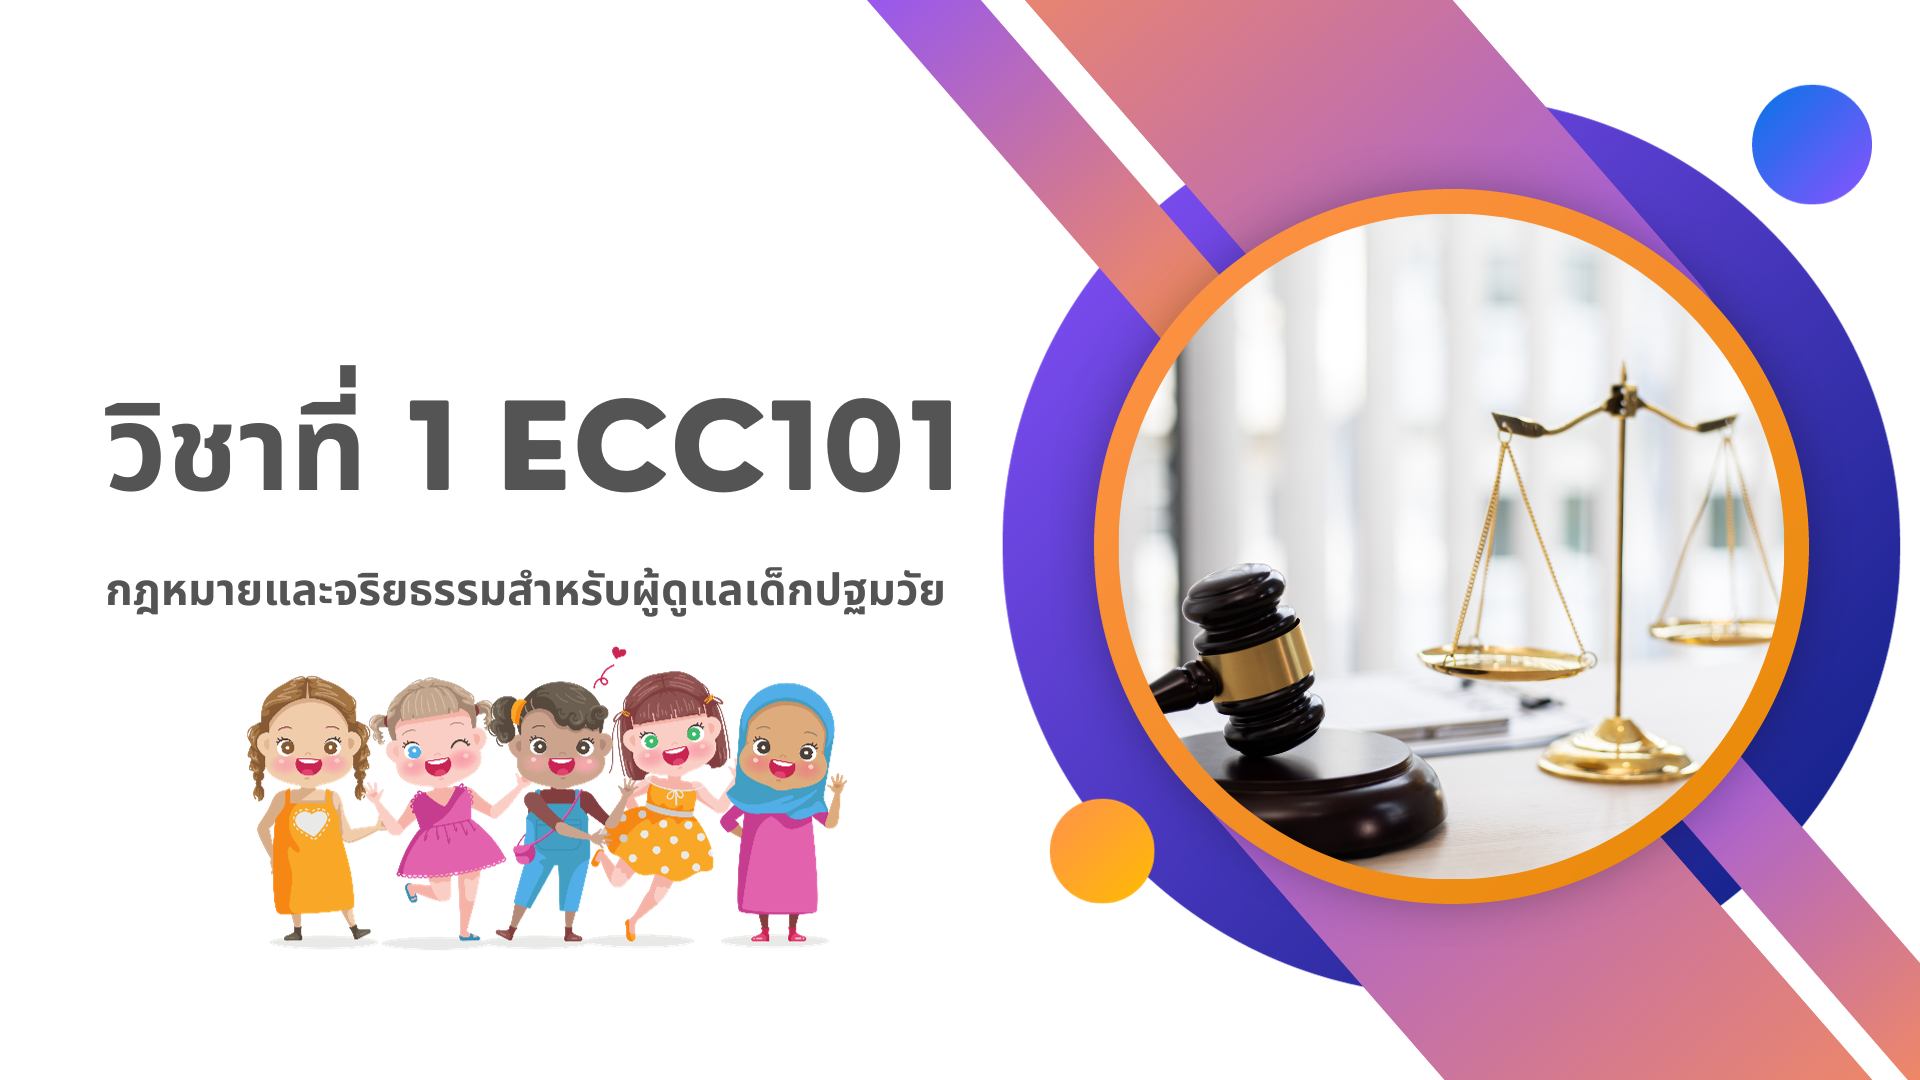 วิชาที่ 1 ECC101: กฎหมายและจริยธรรมสำหรับผู้ดูแลเด็กปฐมวัย